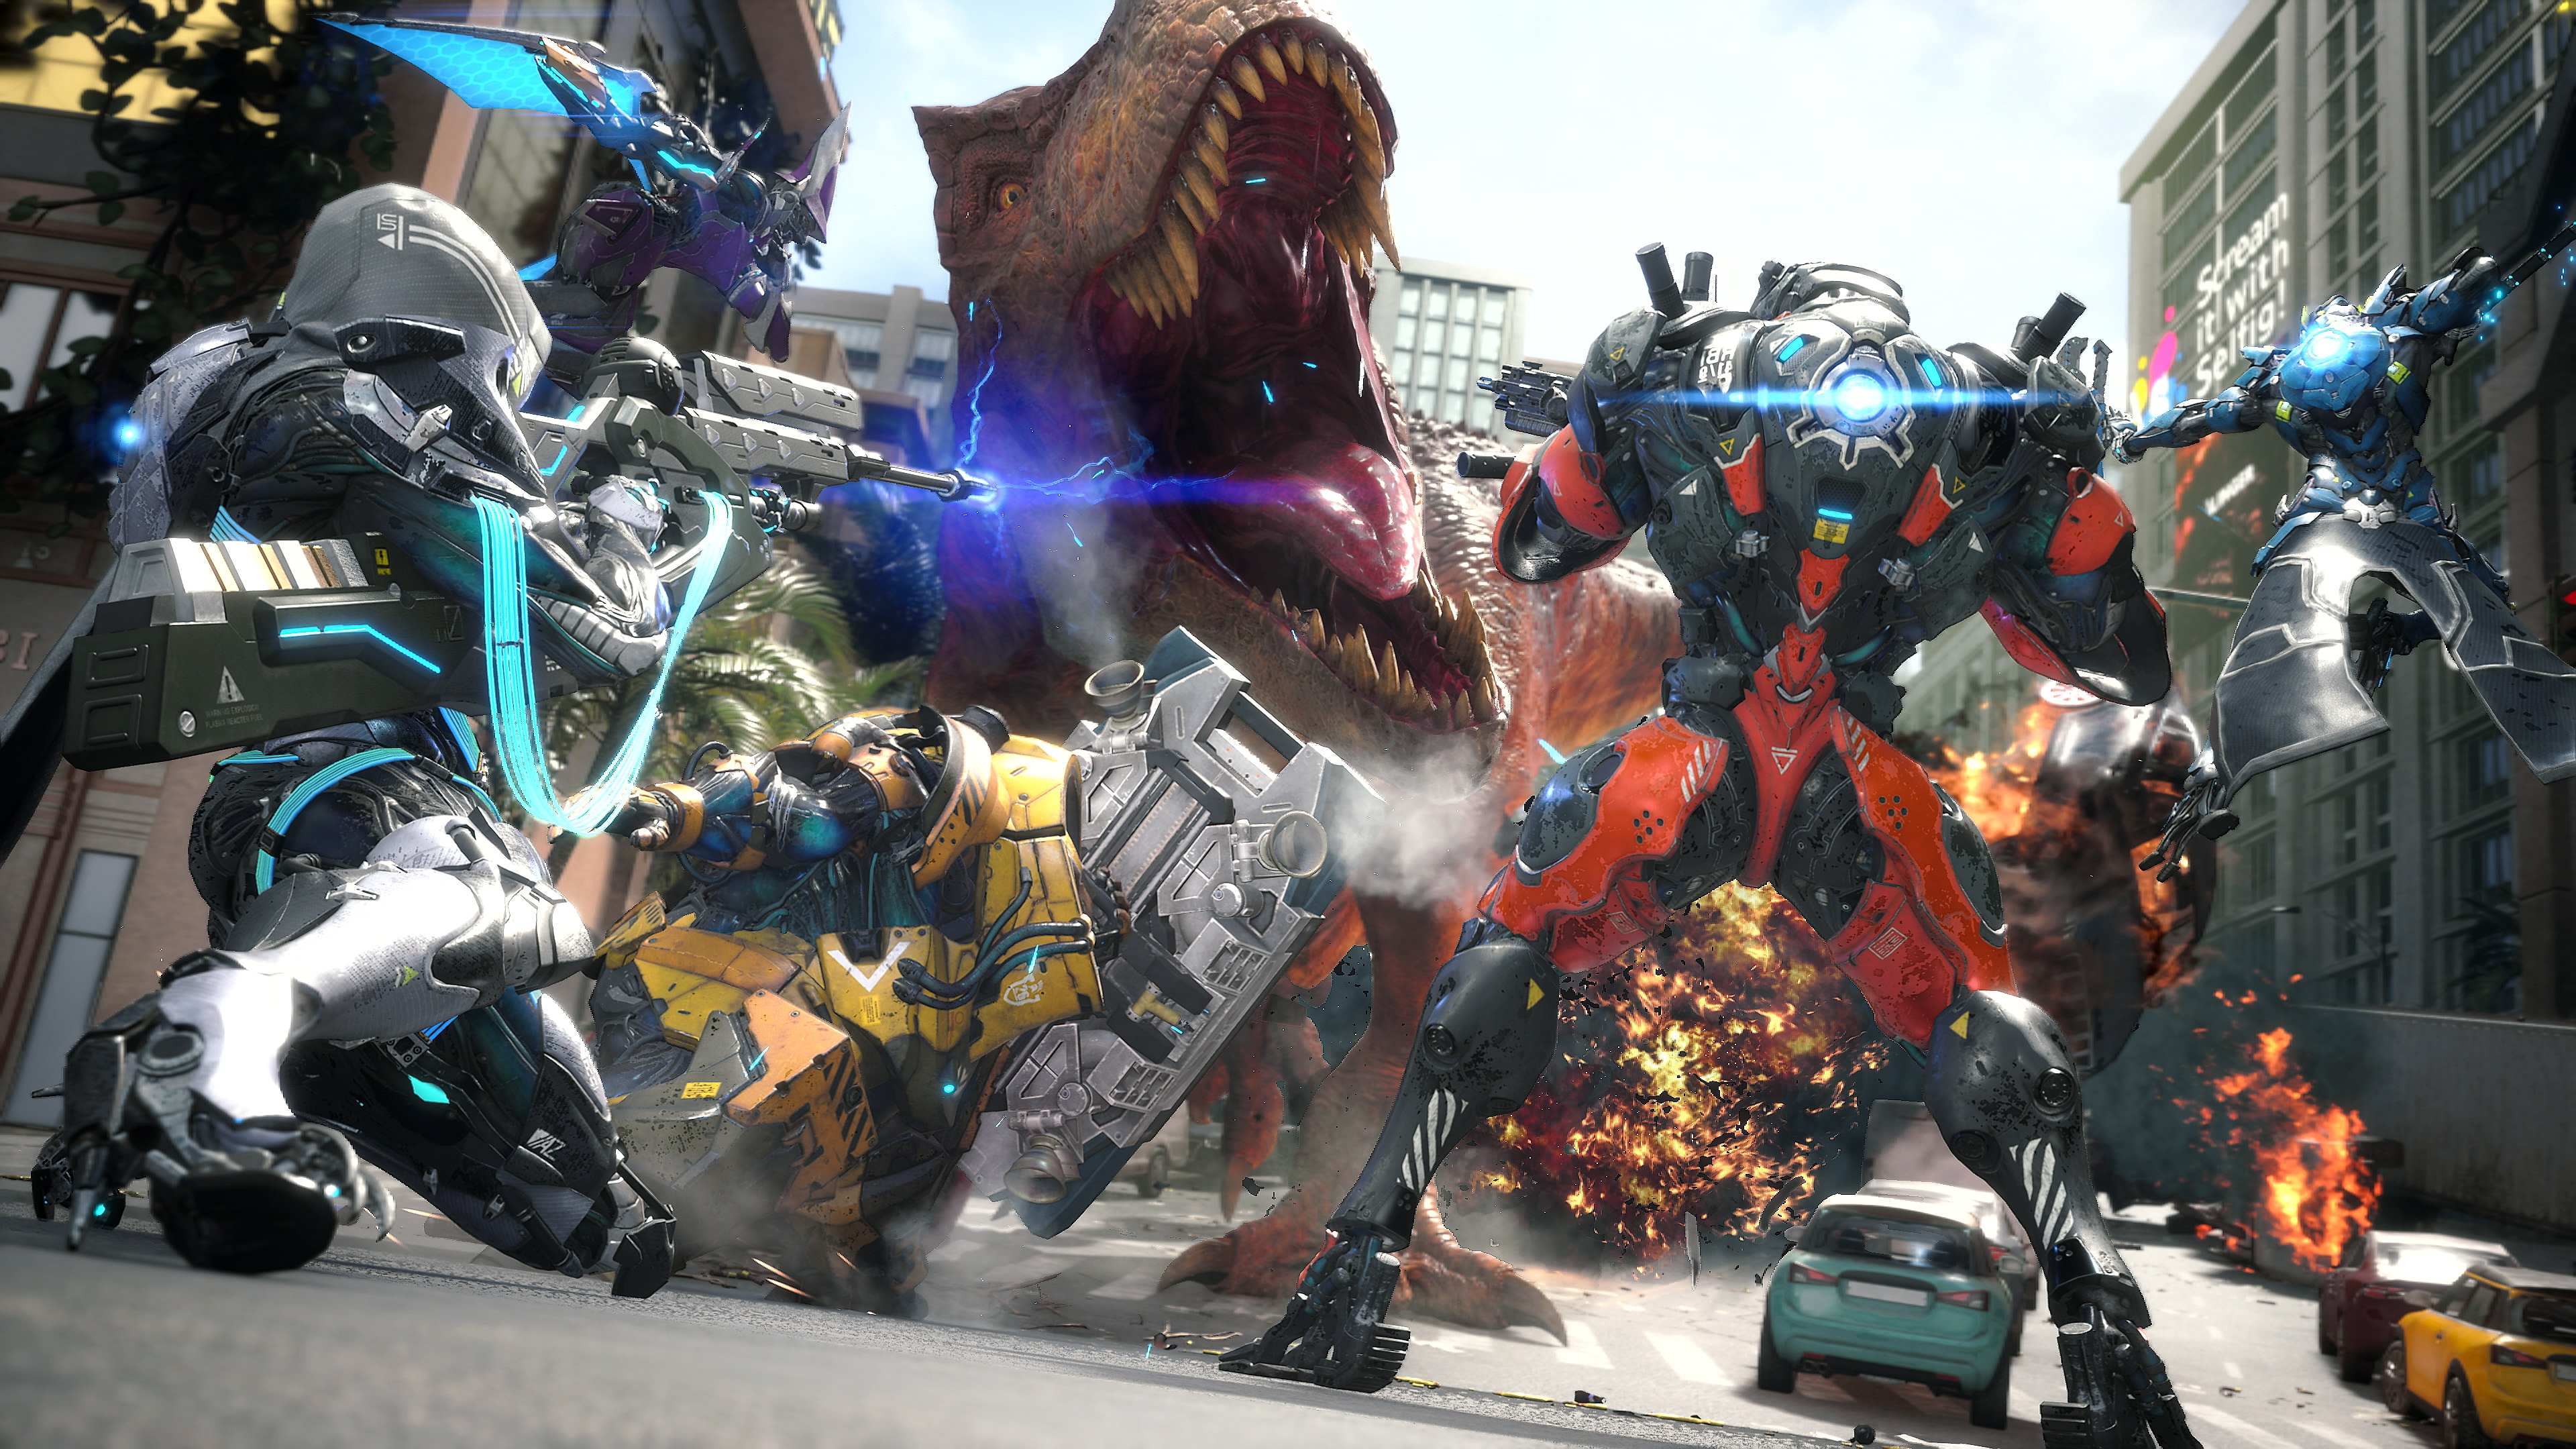 Exoprimal - Capture d'écran montrant une équipe de personnages dans des exosquelettes et faisant face à un dinosaure aux allures de T-rex